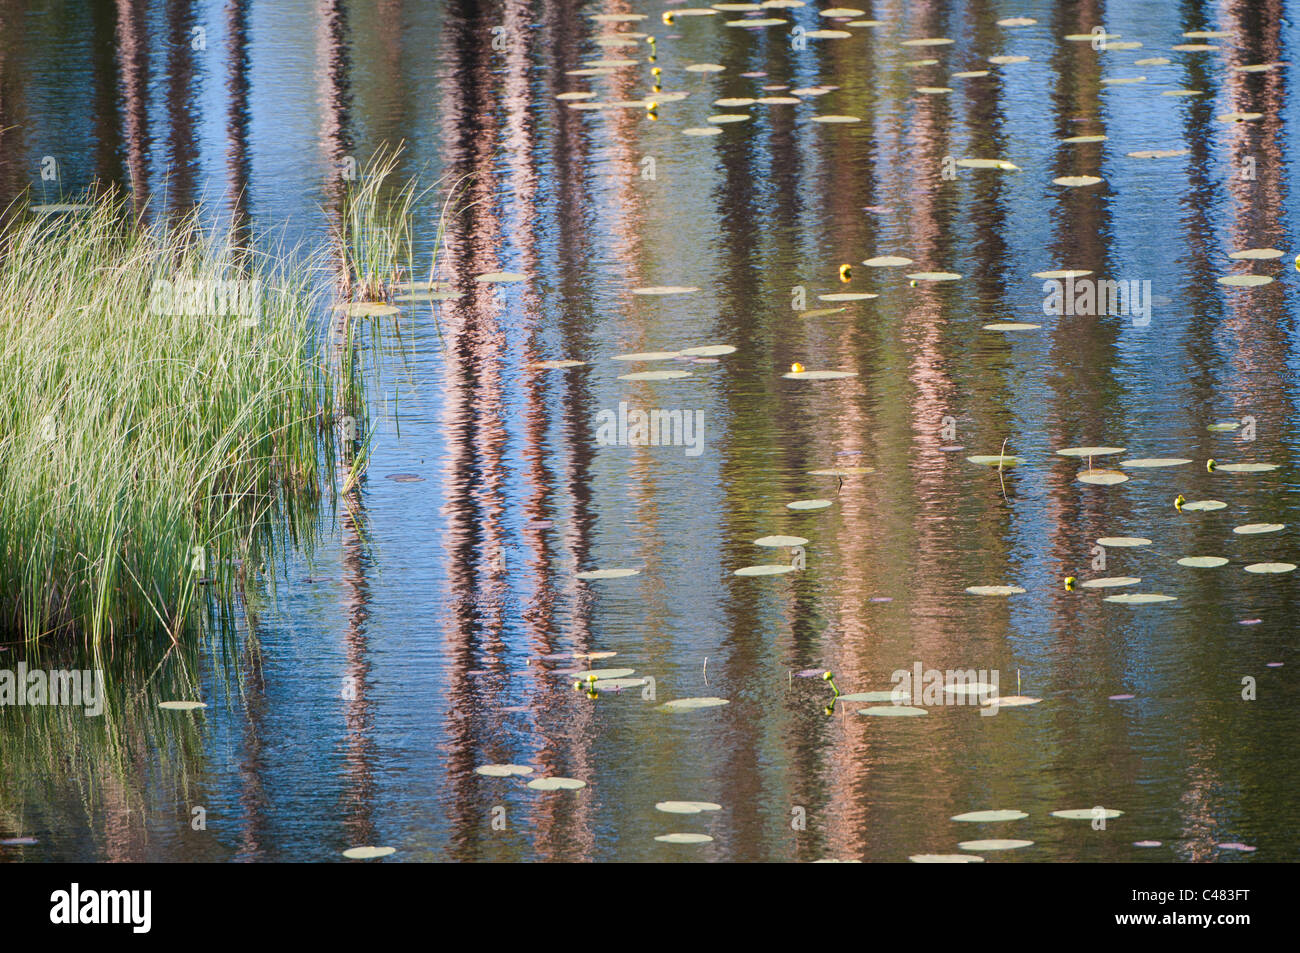 Baumstaemme spiegeln sich in einem Waldsee, Rena, Hedmark, Norwegen, Tree trunks reflecting in a lake, Norway Stock Photo